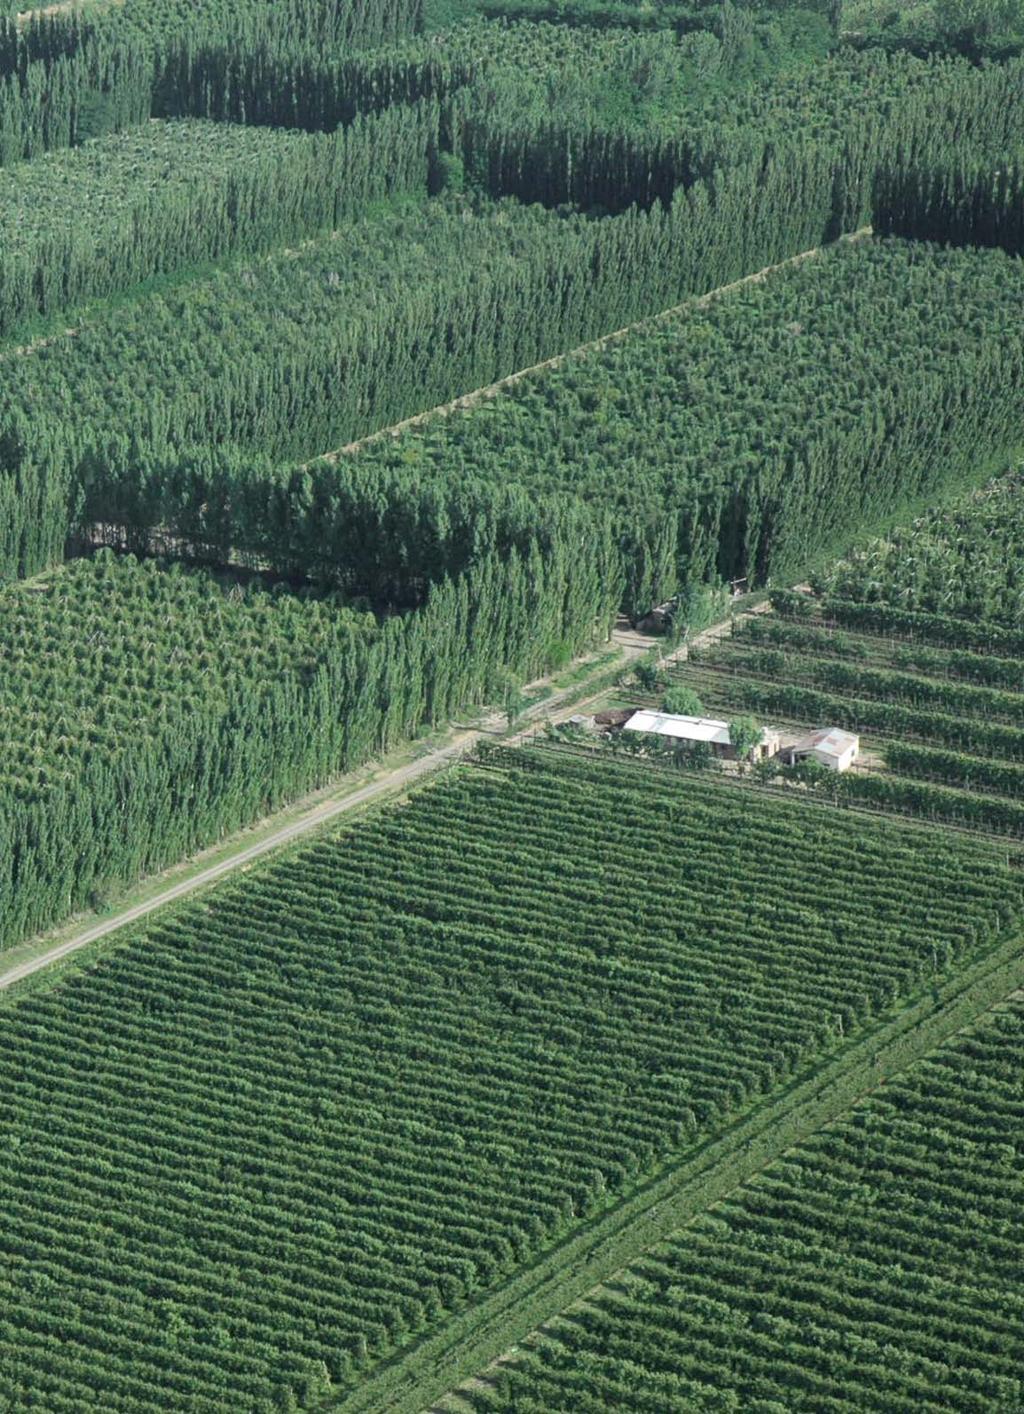 Cortinas rompevientos En los valles irrigados de la norpatagonia, la temporada de producción frutícola coincide con los meses más ventosos del año.